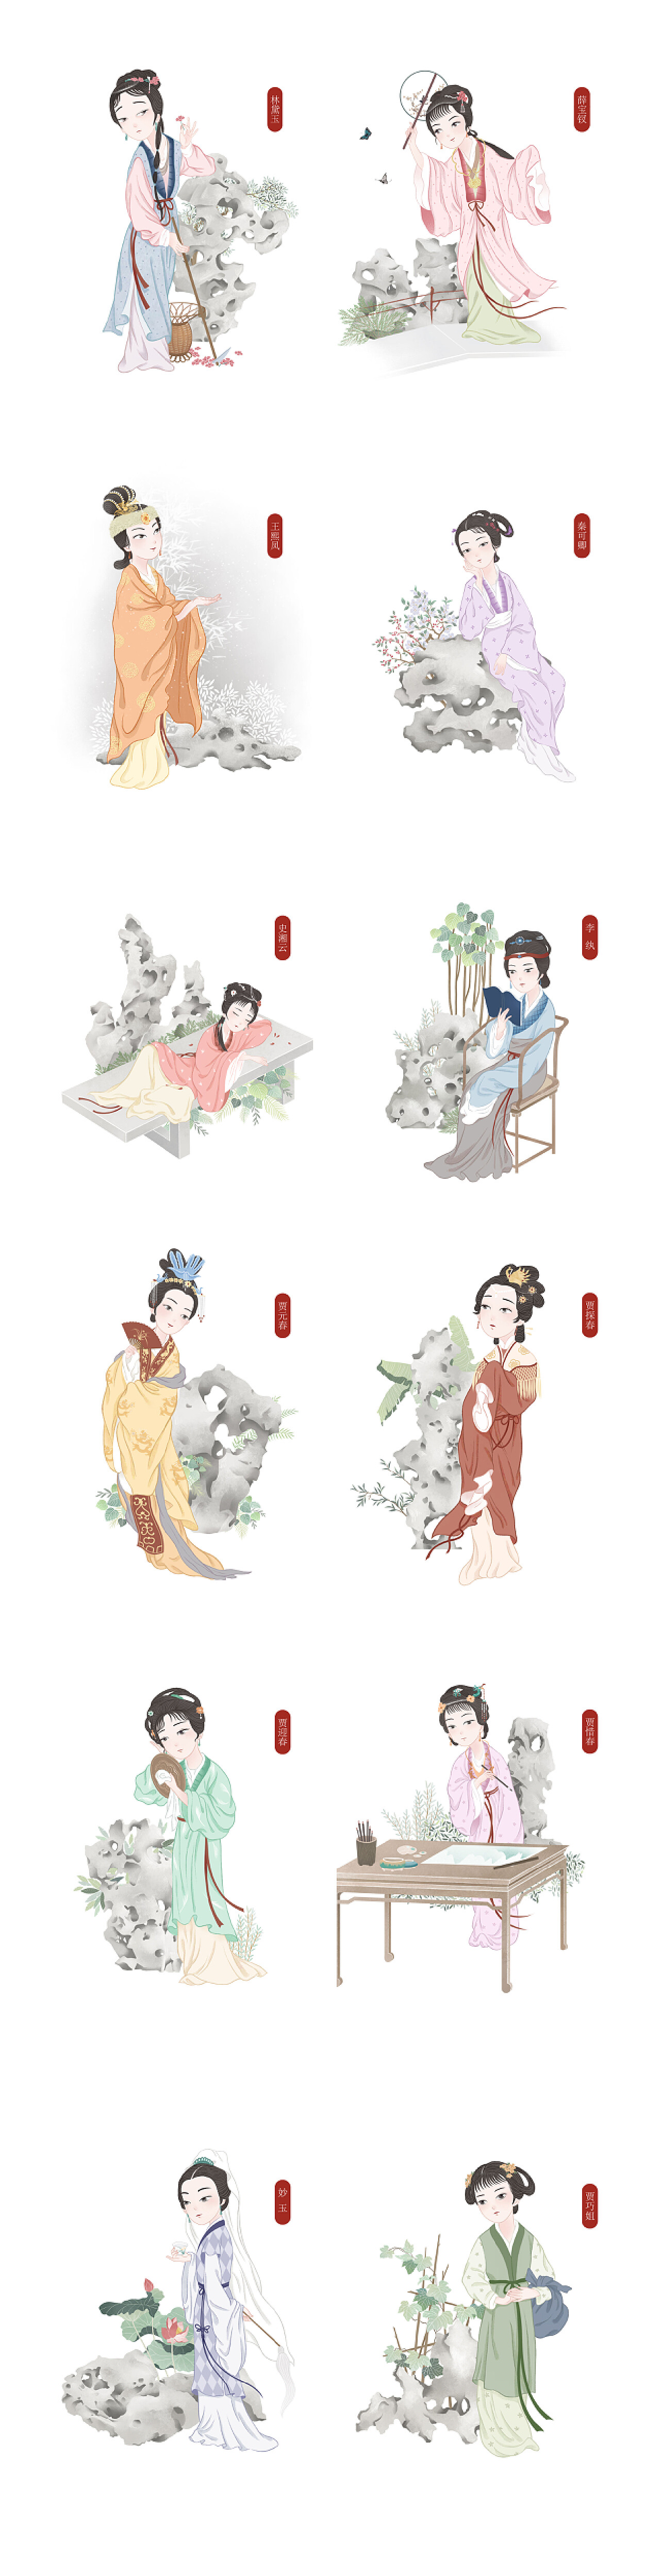 金陵十二钗《红楼梦》中的小饰物分享收藏标签红楼梦插画人物贾宝玉林